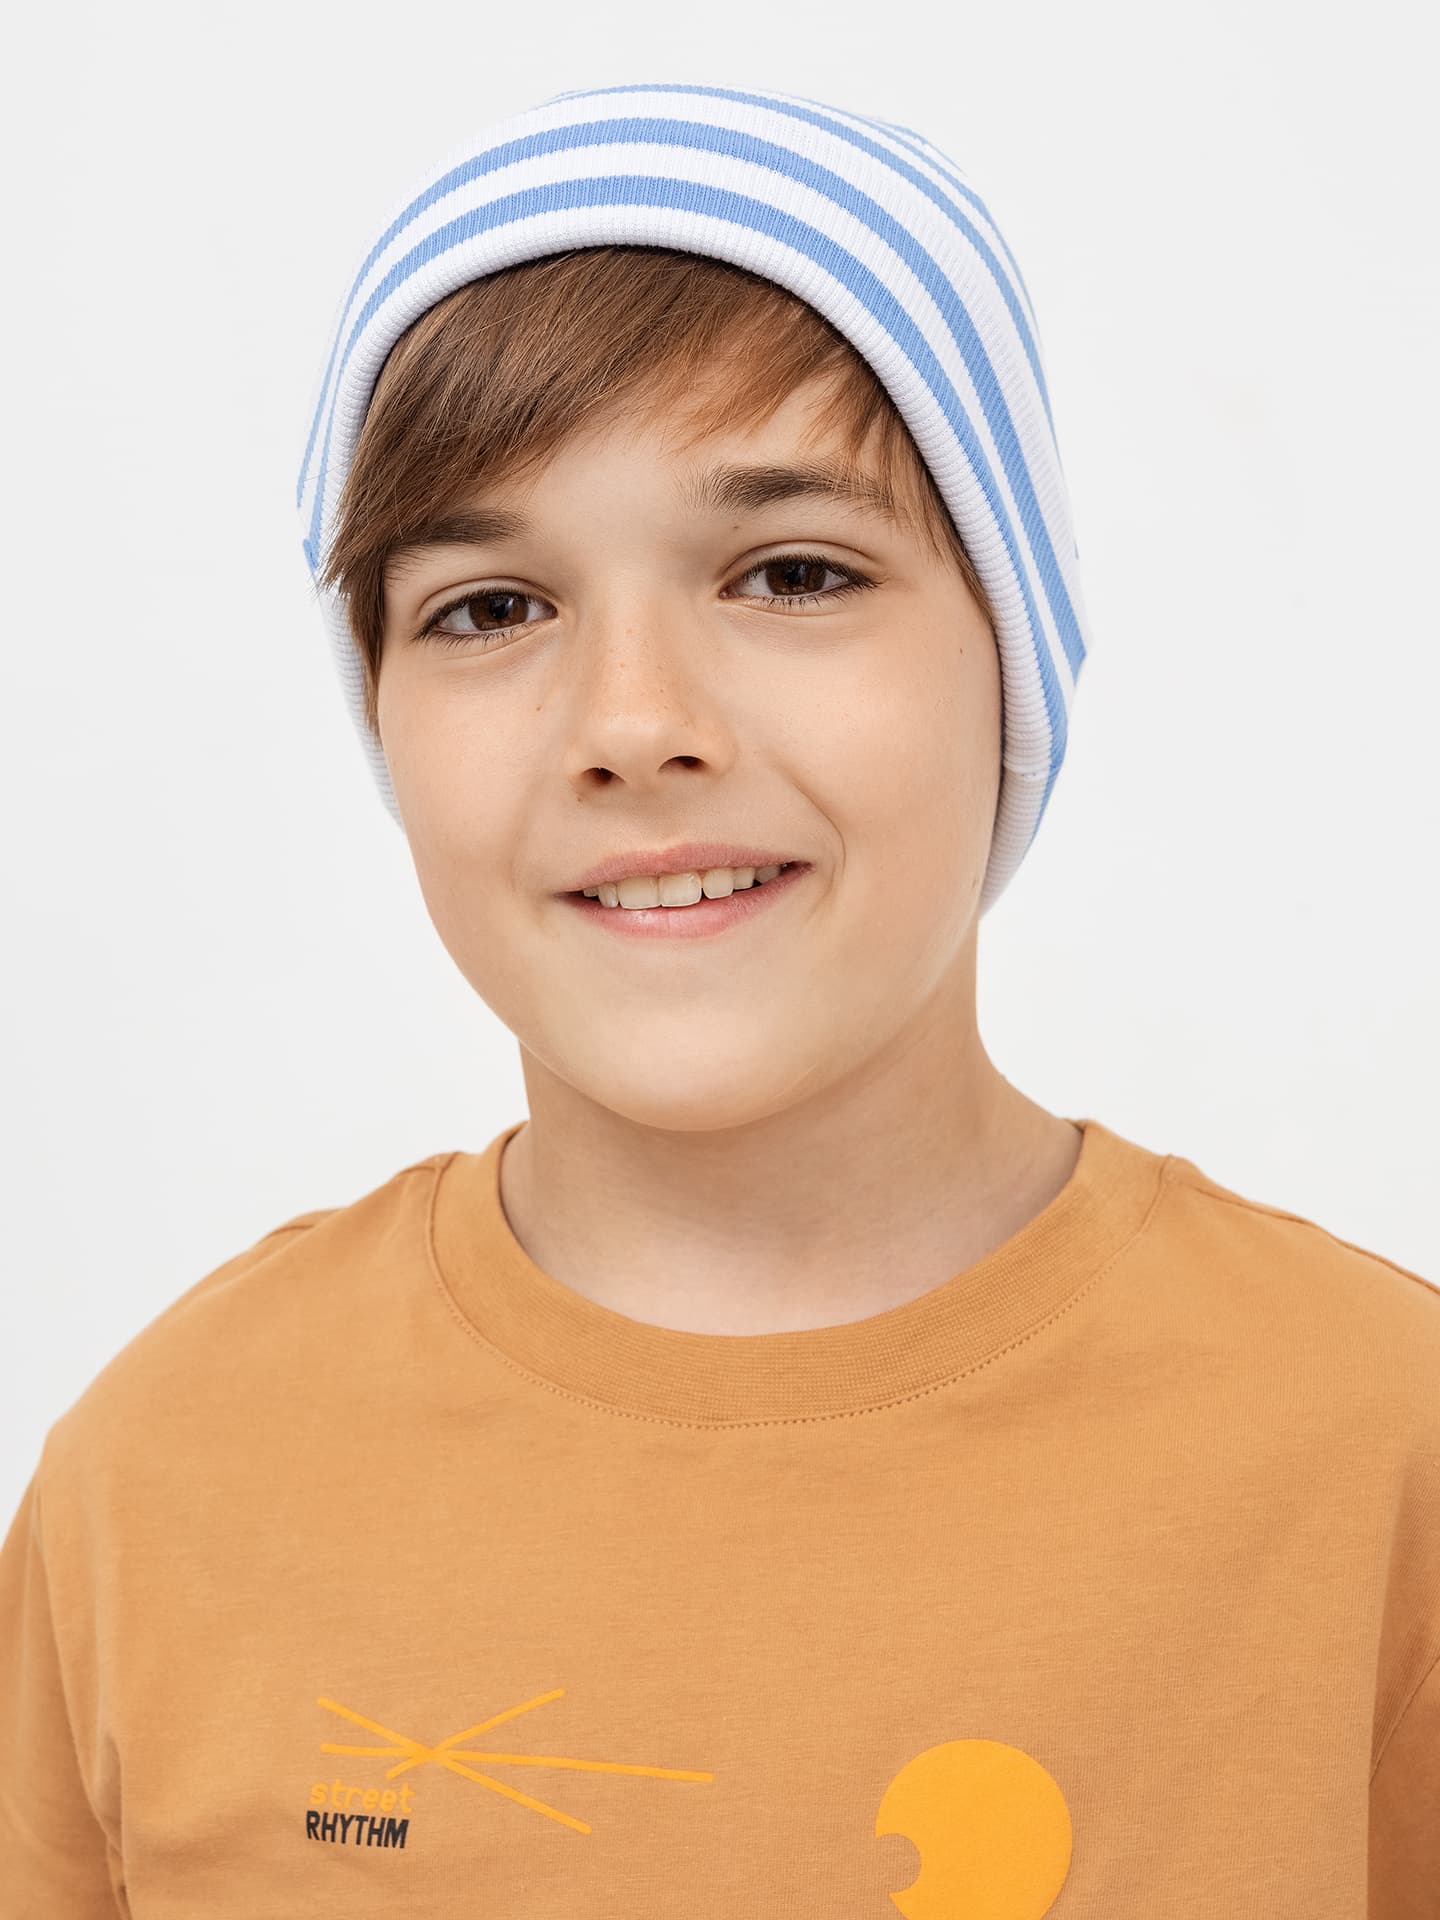 Детская шапка из полотна в рубчик в оттенке в бело-синюю полоску